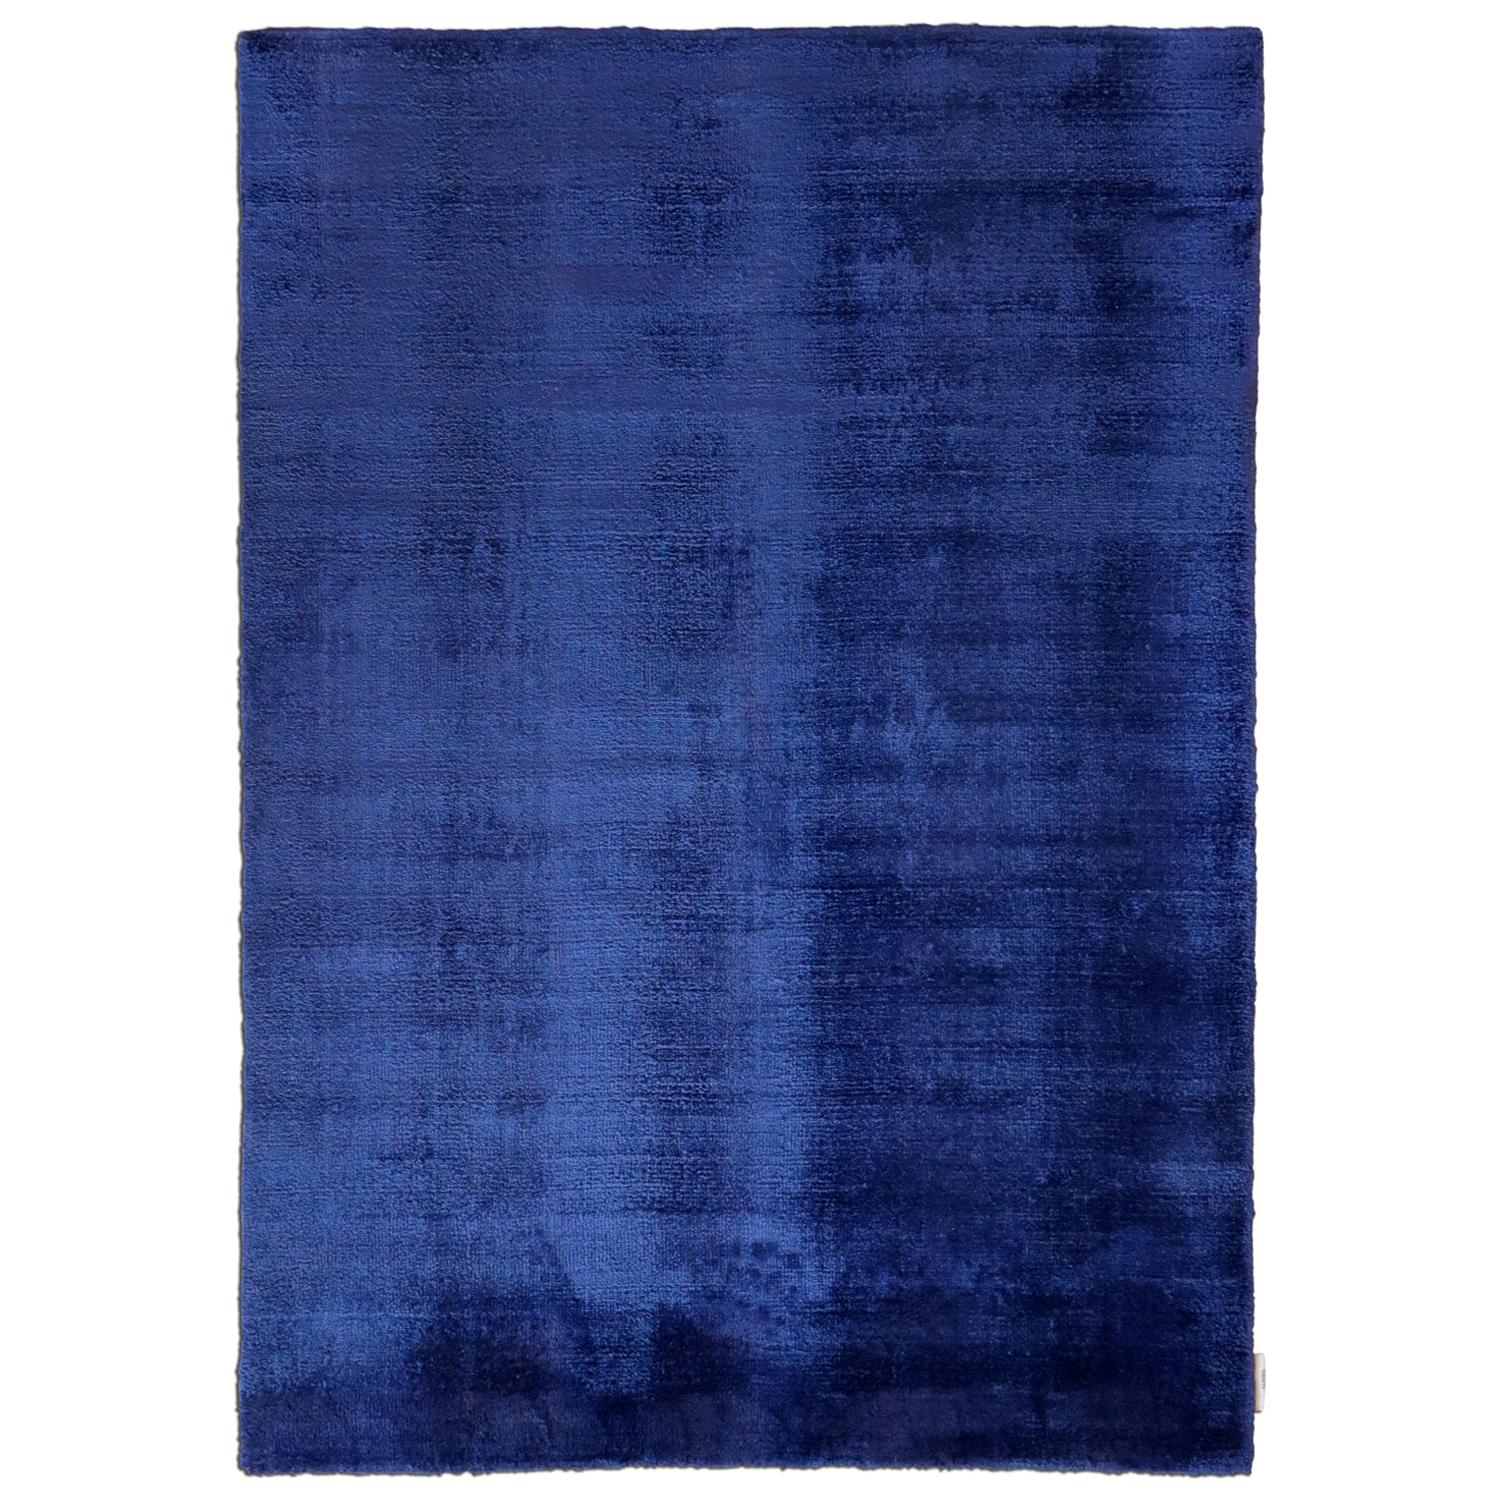 Zeitgenössischer tiefblauer, weicher, glänzender Seidenteppich von Deanna Comellini 250x350 cm